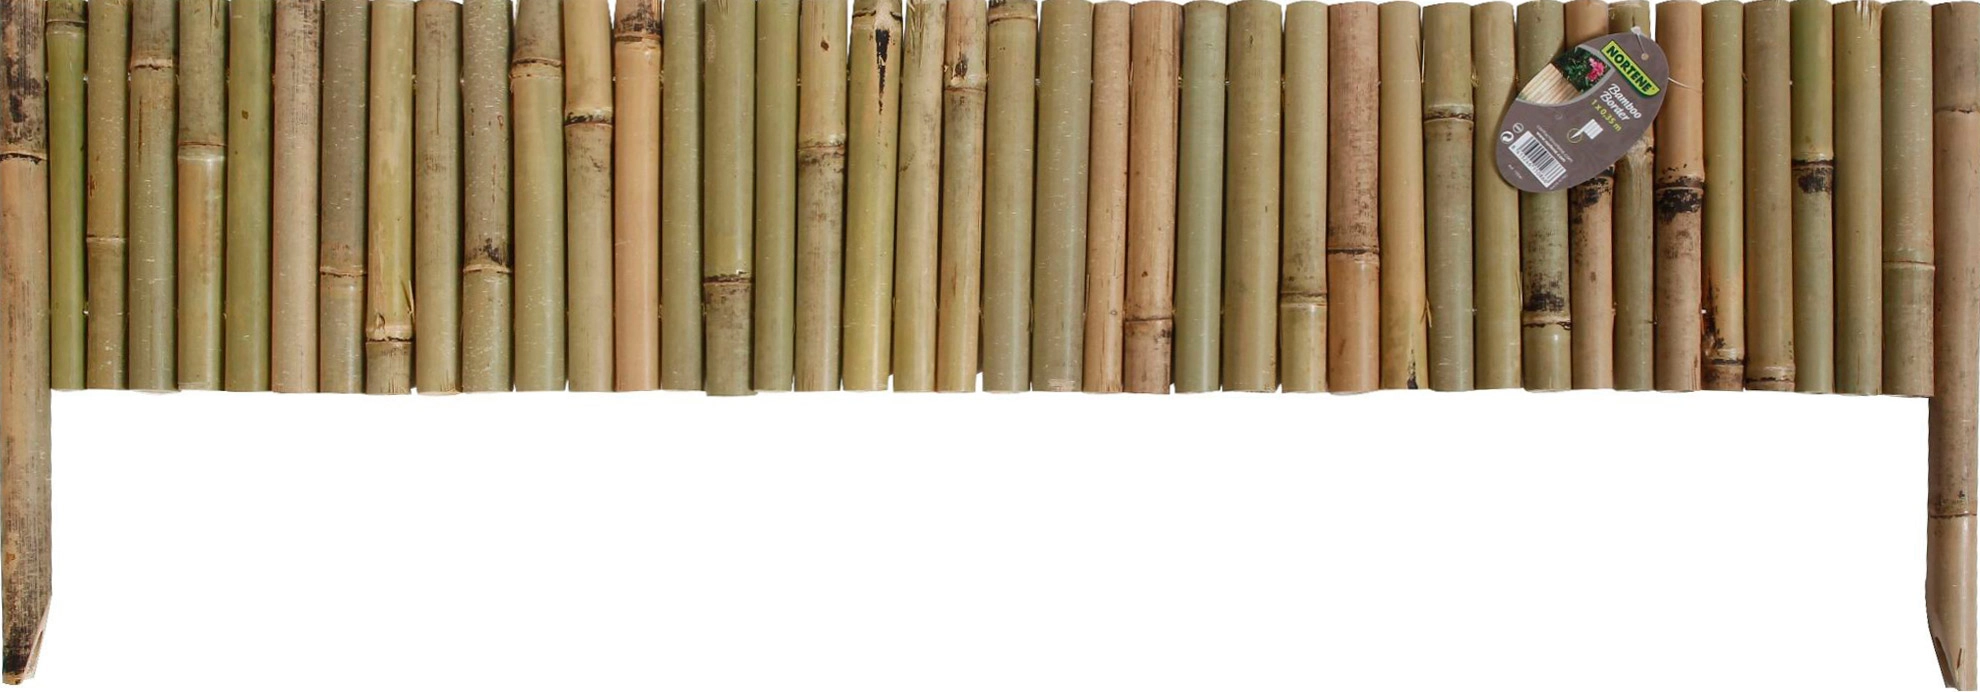 Nortene Bamboo border természetes bambusz ágyásszegély, 1m x 35 cm